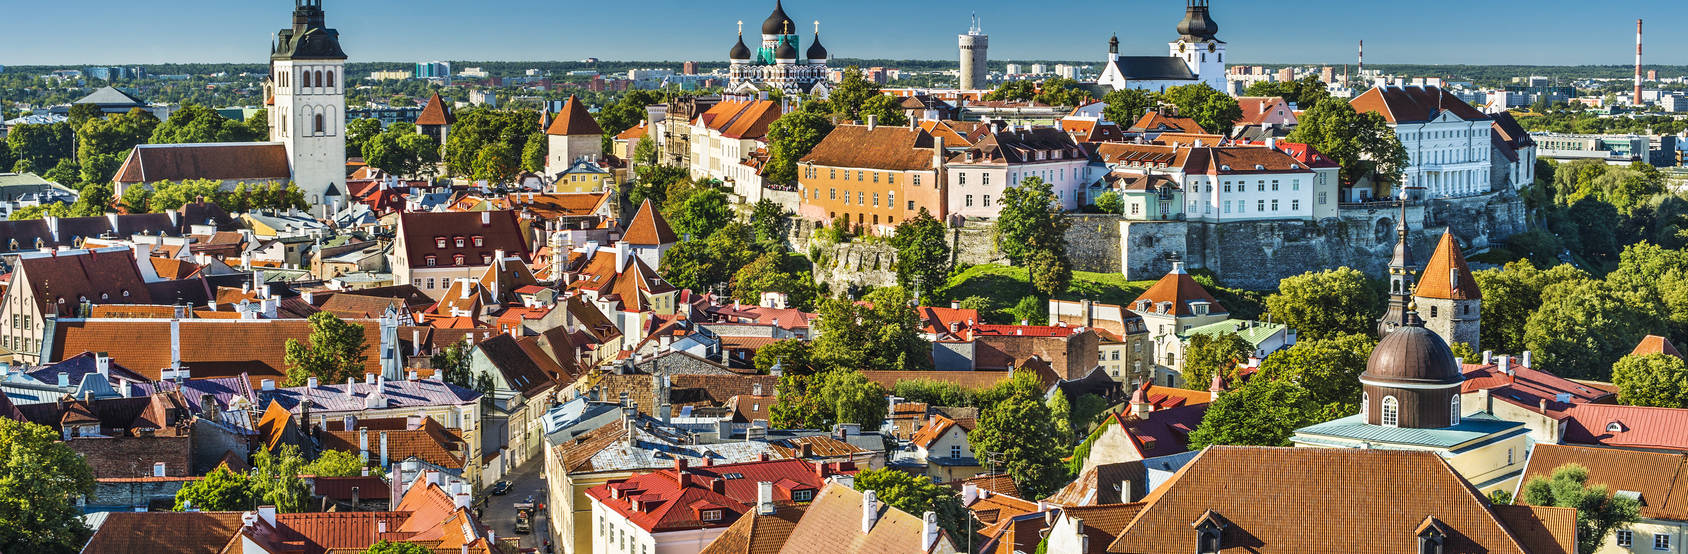 Tallinn-Fotolia_60895655_M.jpg